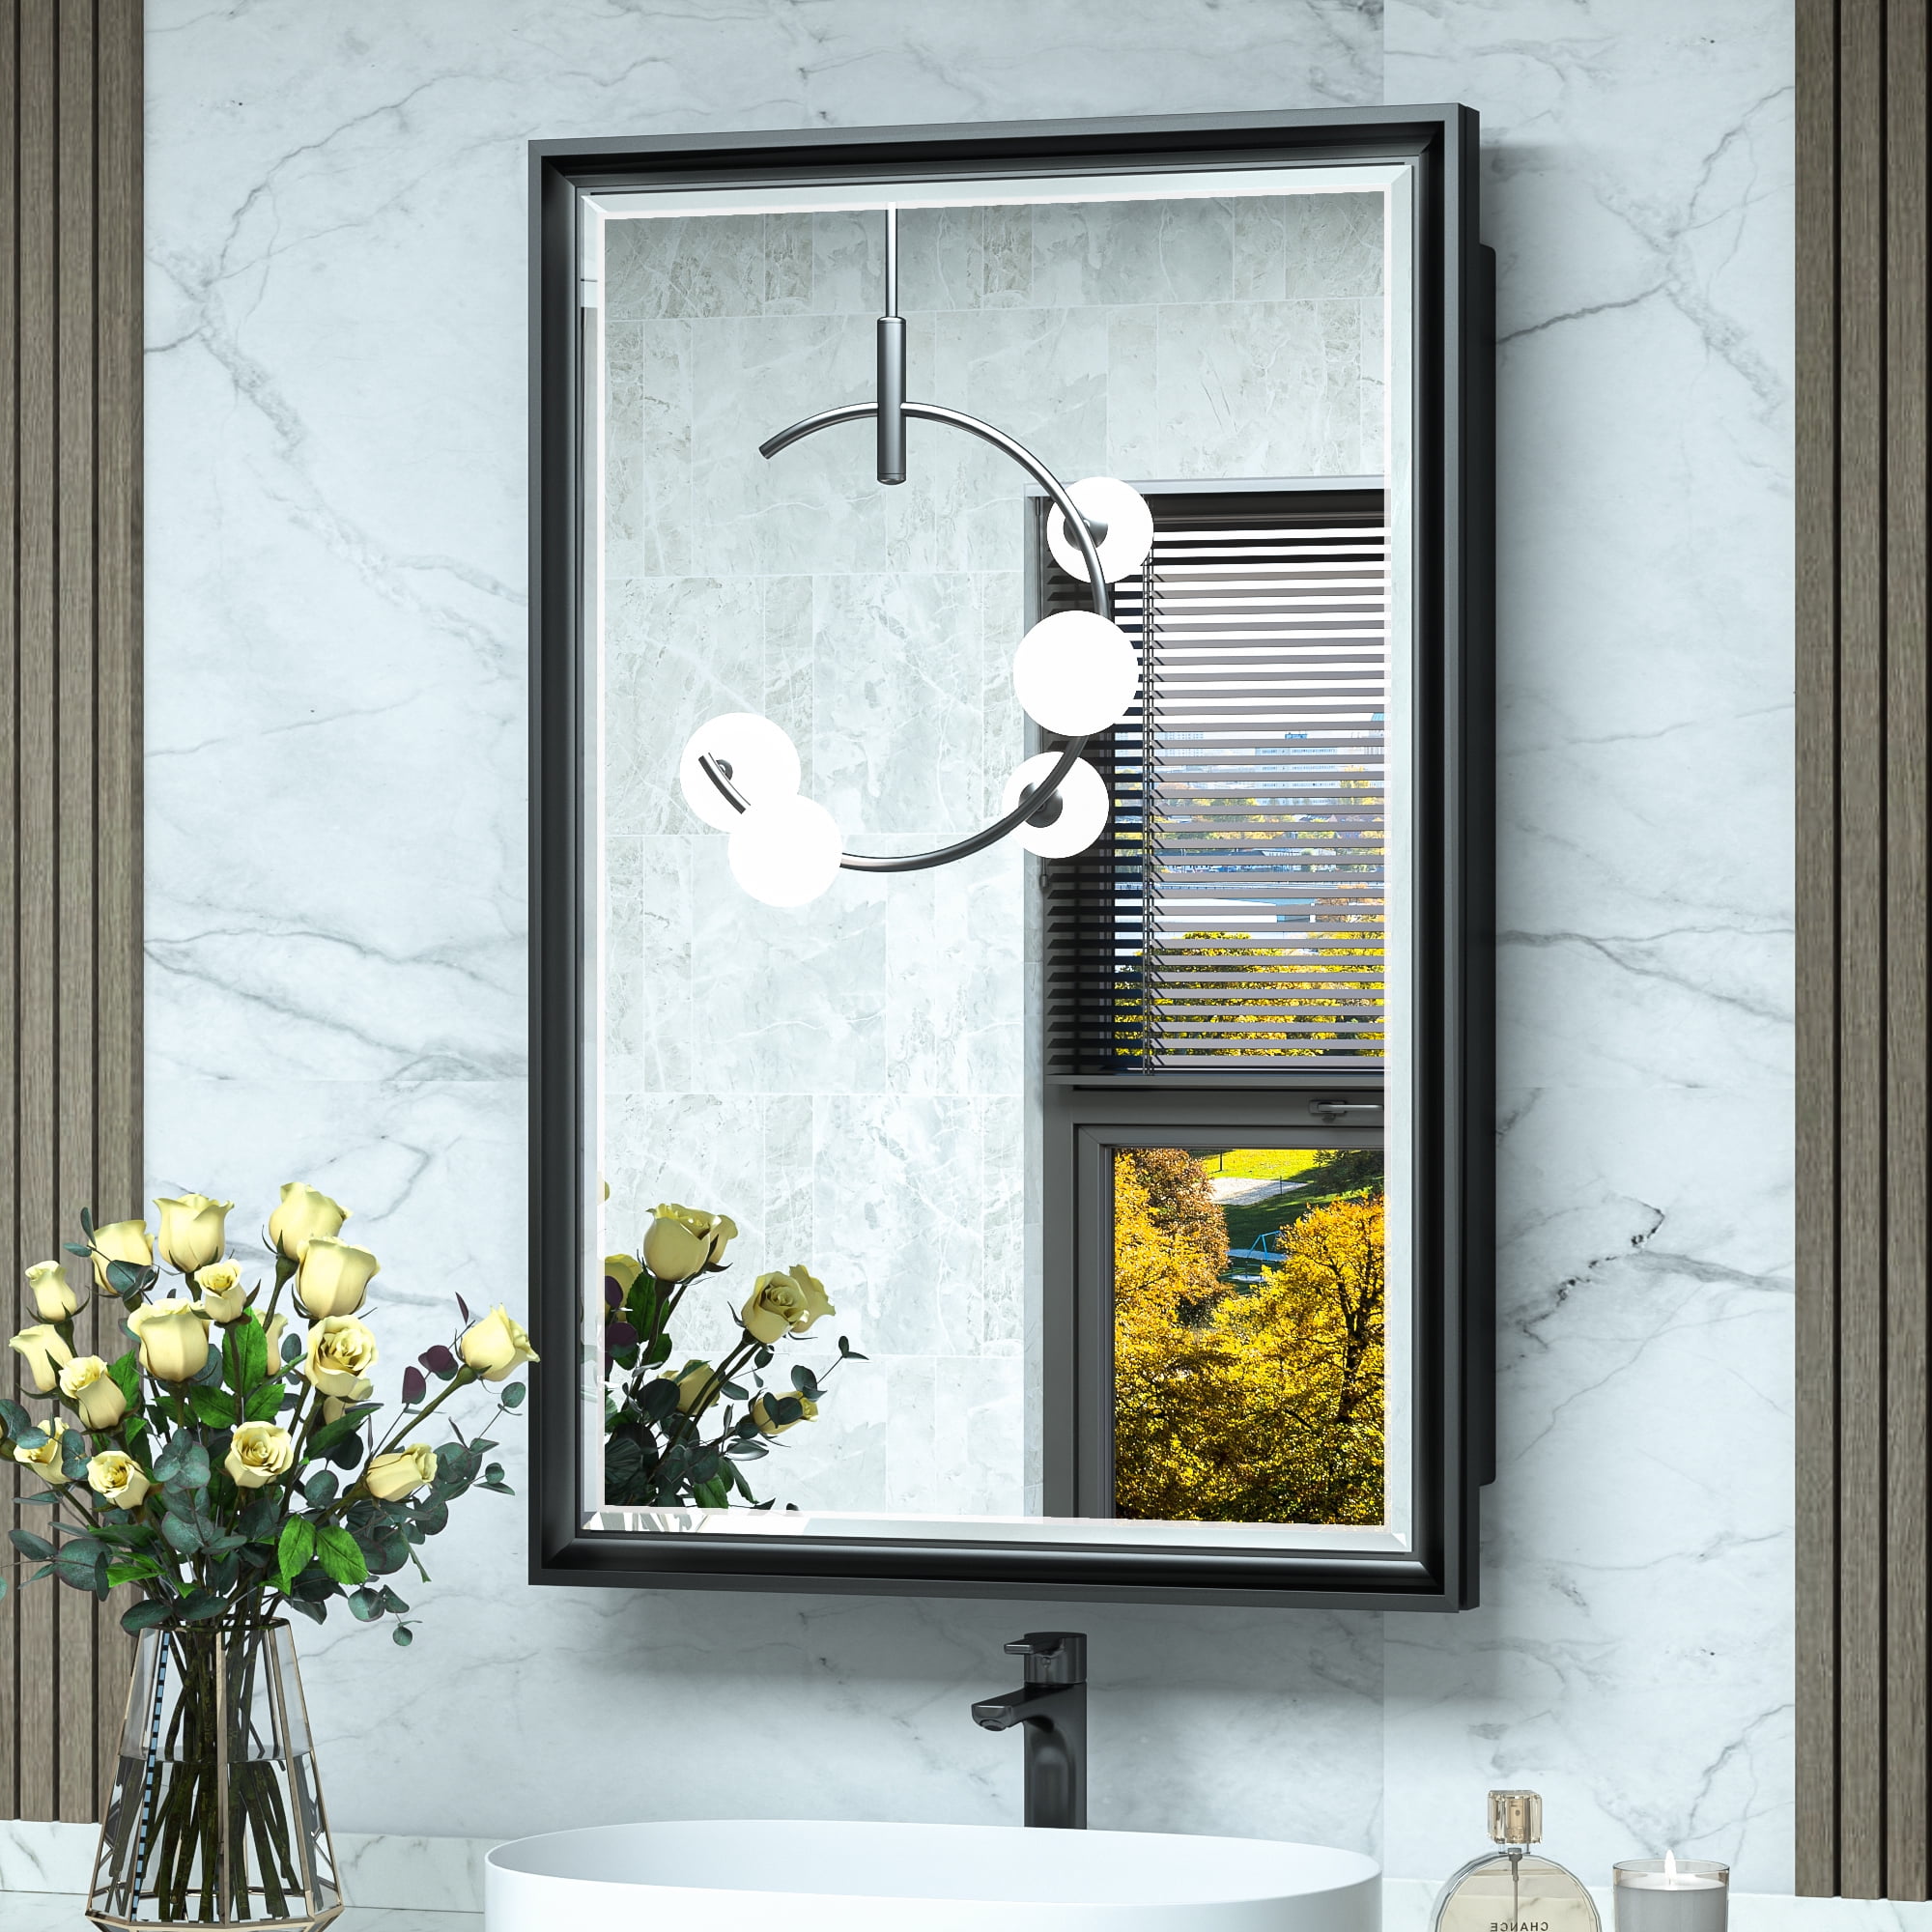 TEHOME 26 in. W x 30 in. H Double Door Rectangular Metal Framed Rounded Bathroom Medicine Cabinet with Mirror in Matt Black